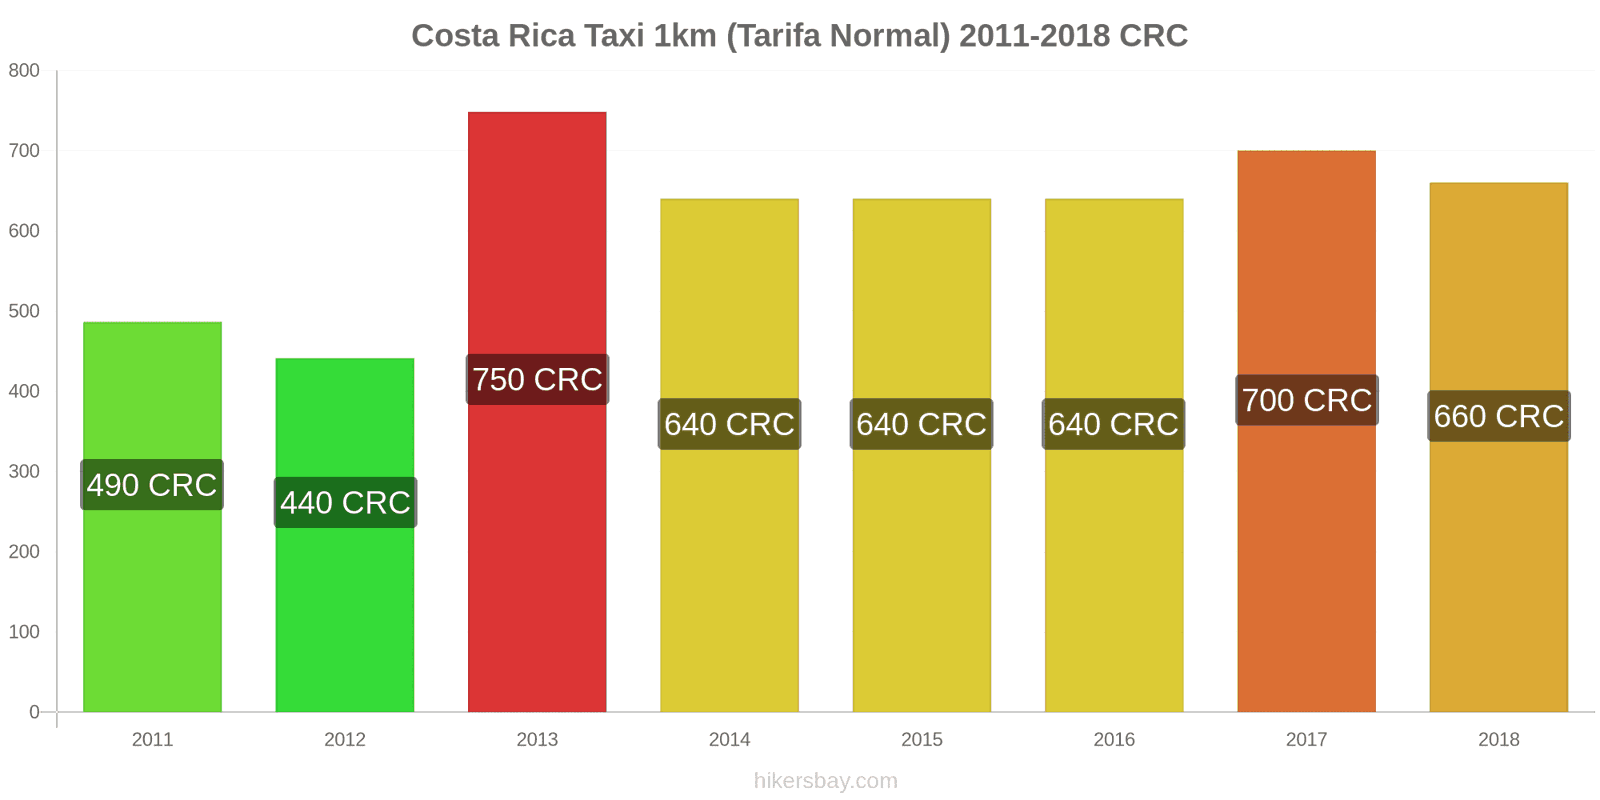 Costa Rica cambios de precios Taxi 1km (tarifa normal) hikersbay.com